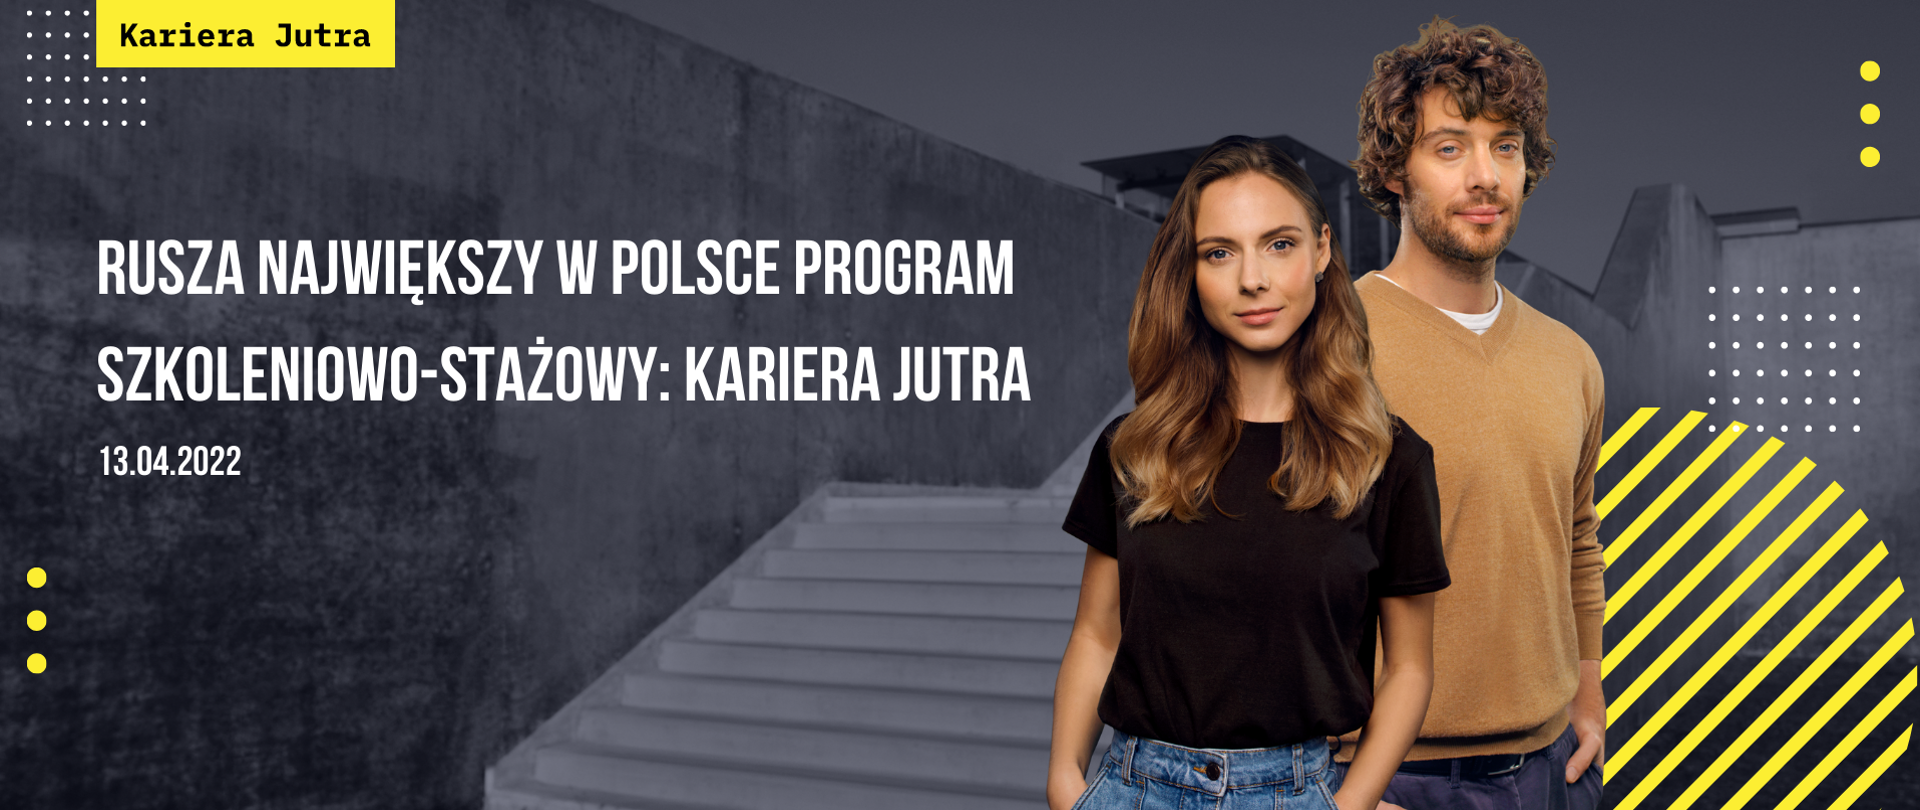 Największy w Polsce program szkoleniowo-stażowy: Kariera Jutra. Mężczyzna i kobieta w wieku studenckim. Logotyp Kariera Jutra. 